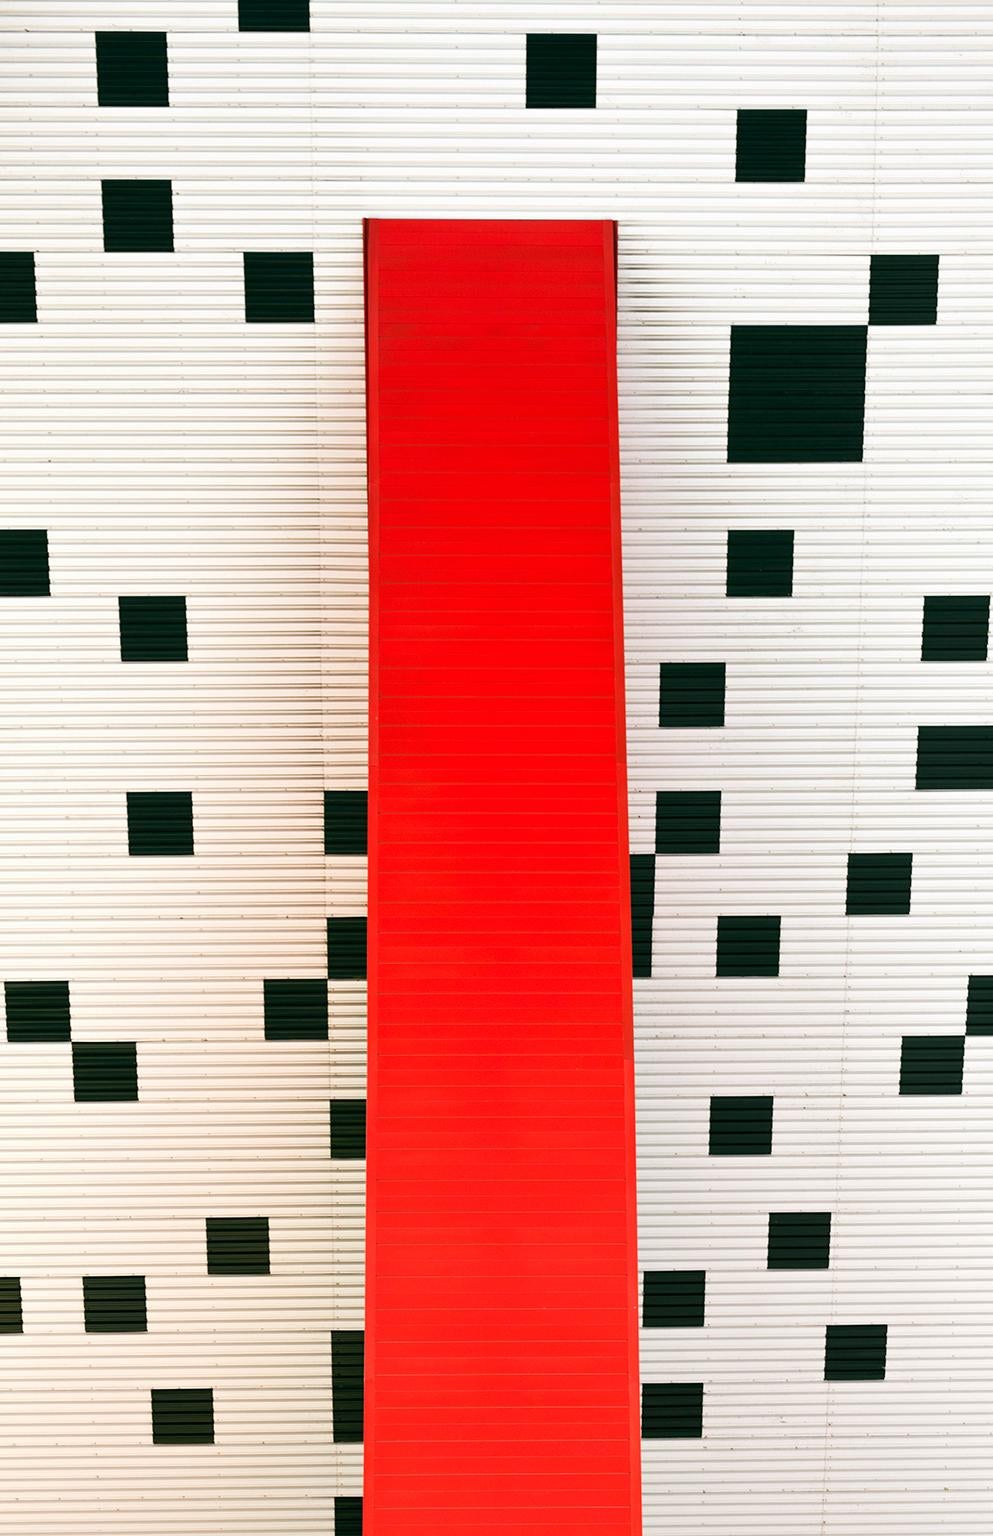  Cosmo Condina Color Photograph - Architectural Detail, Ontario College of Art, Toronto, Canada